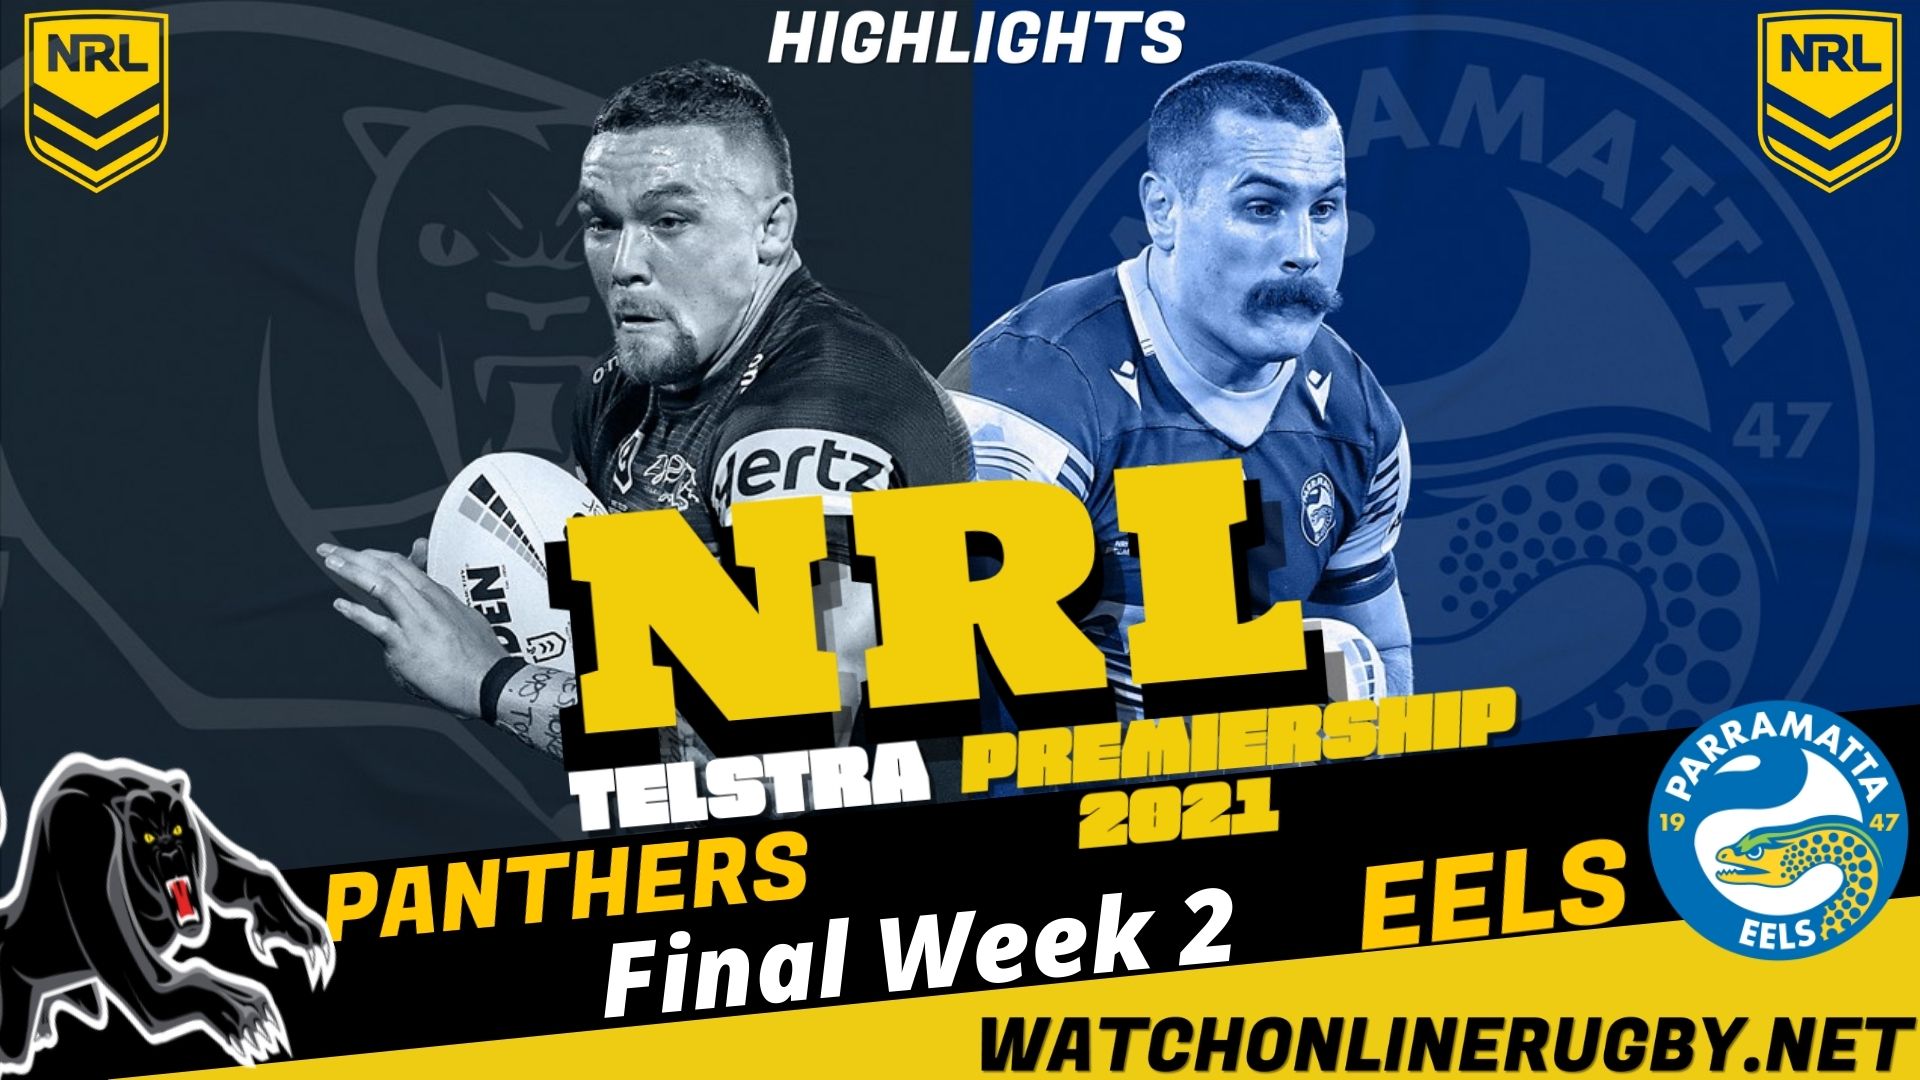 Panthers Vs Eels Highlights Final Week 2 NRL Rugby